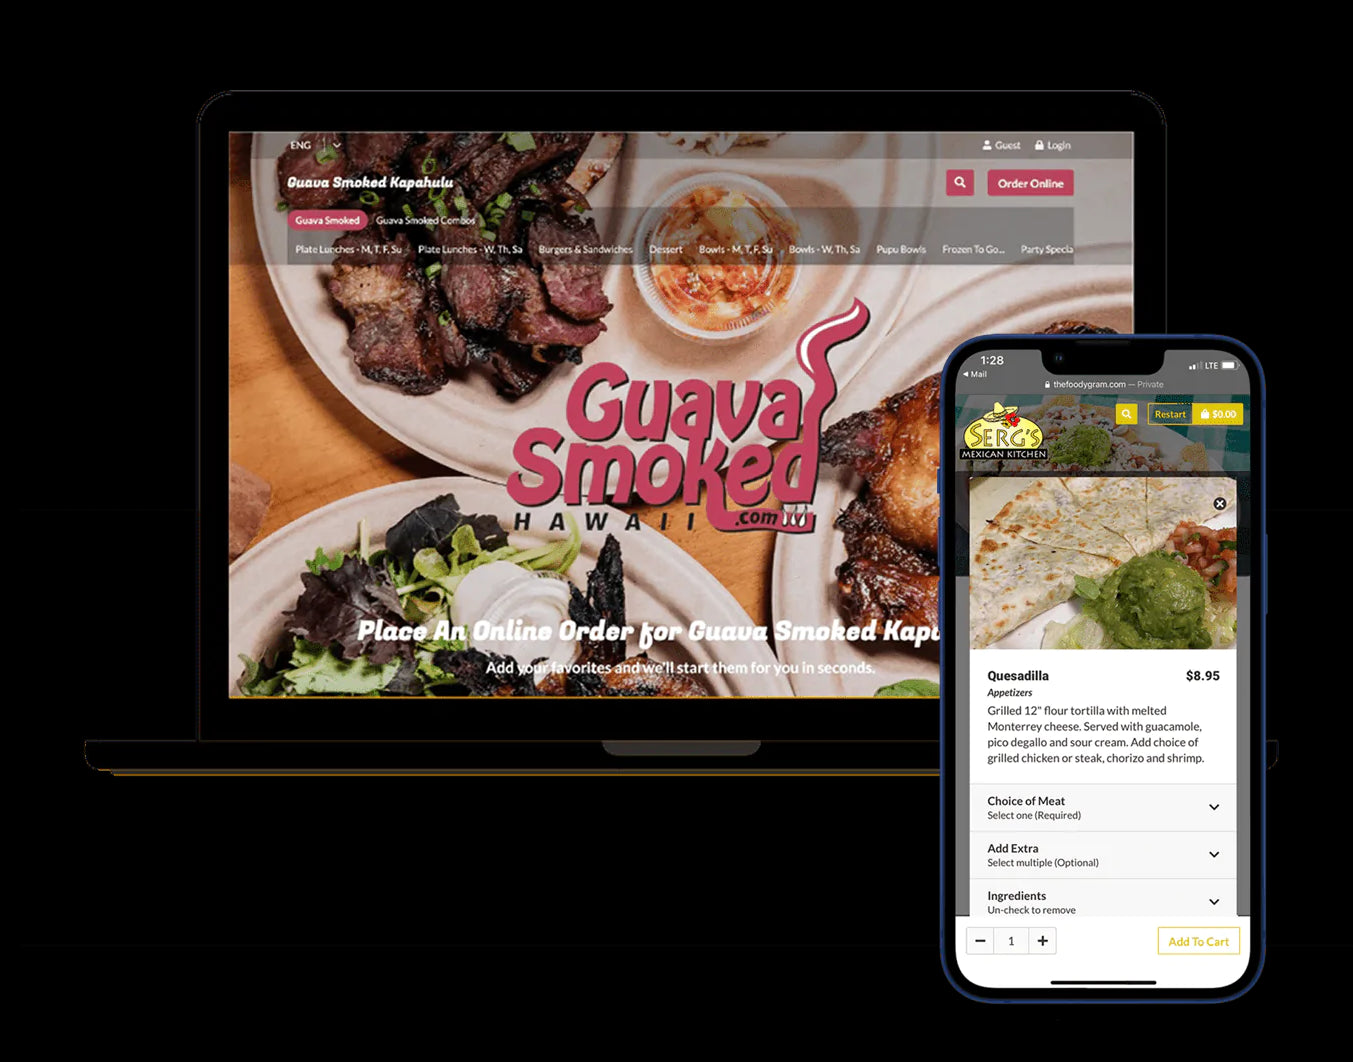 Restaurant website with online ordering